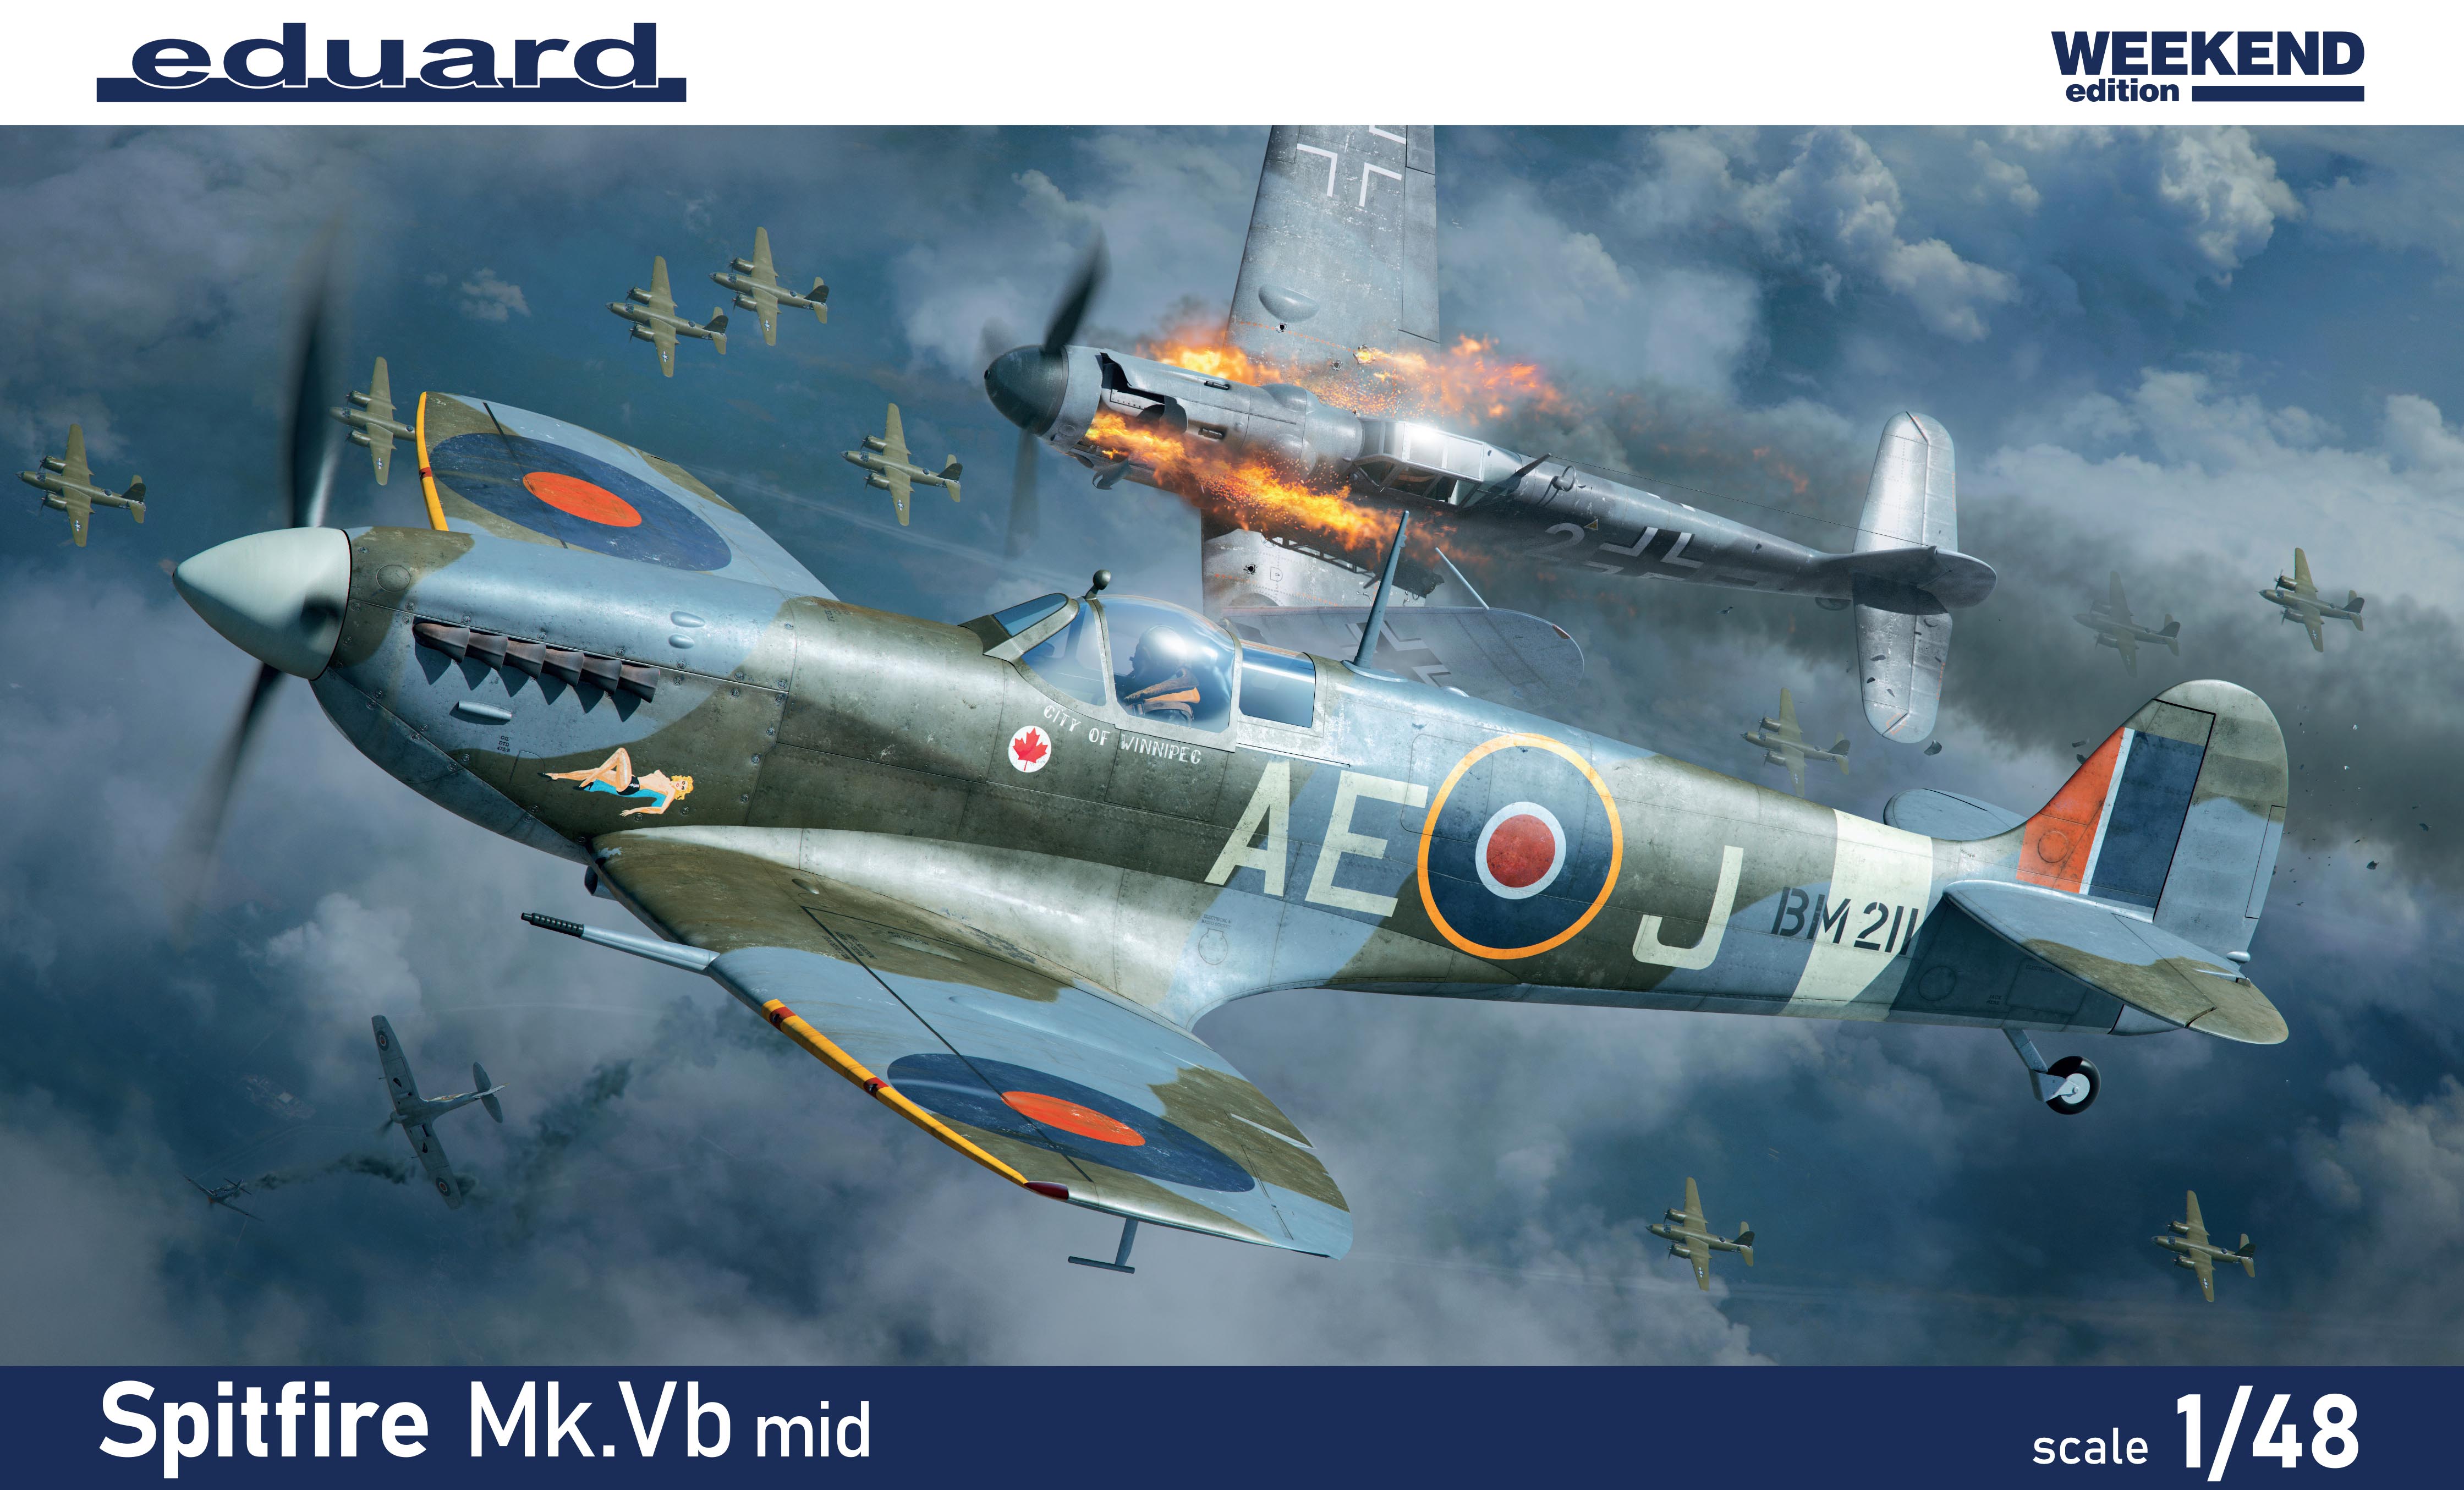 Model kit 1/48 Supermarine Spitfire Mk.Vb mid Weekend edition (Eduard kits)